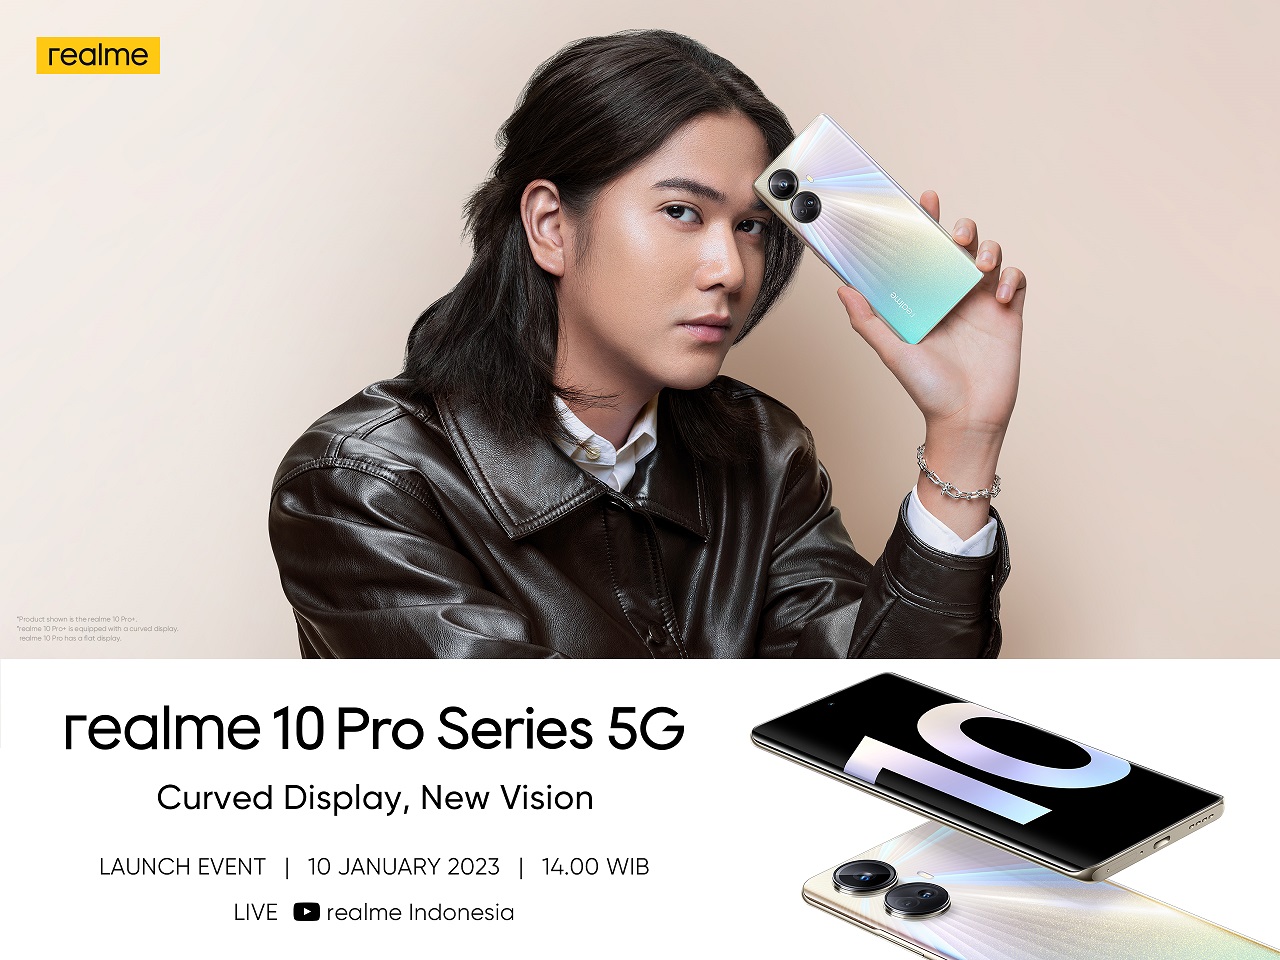 Menantikan Kedatangan Realme 10 Pro Series 5G di Indonesia